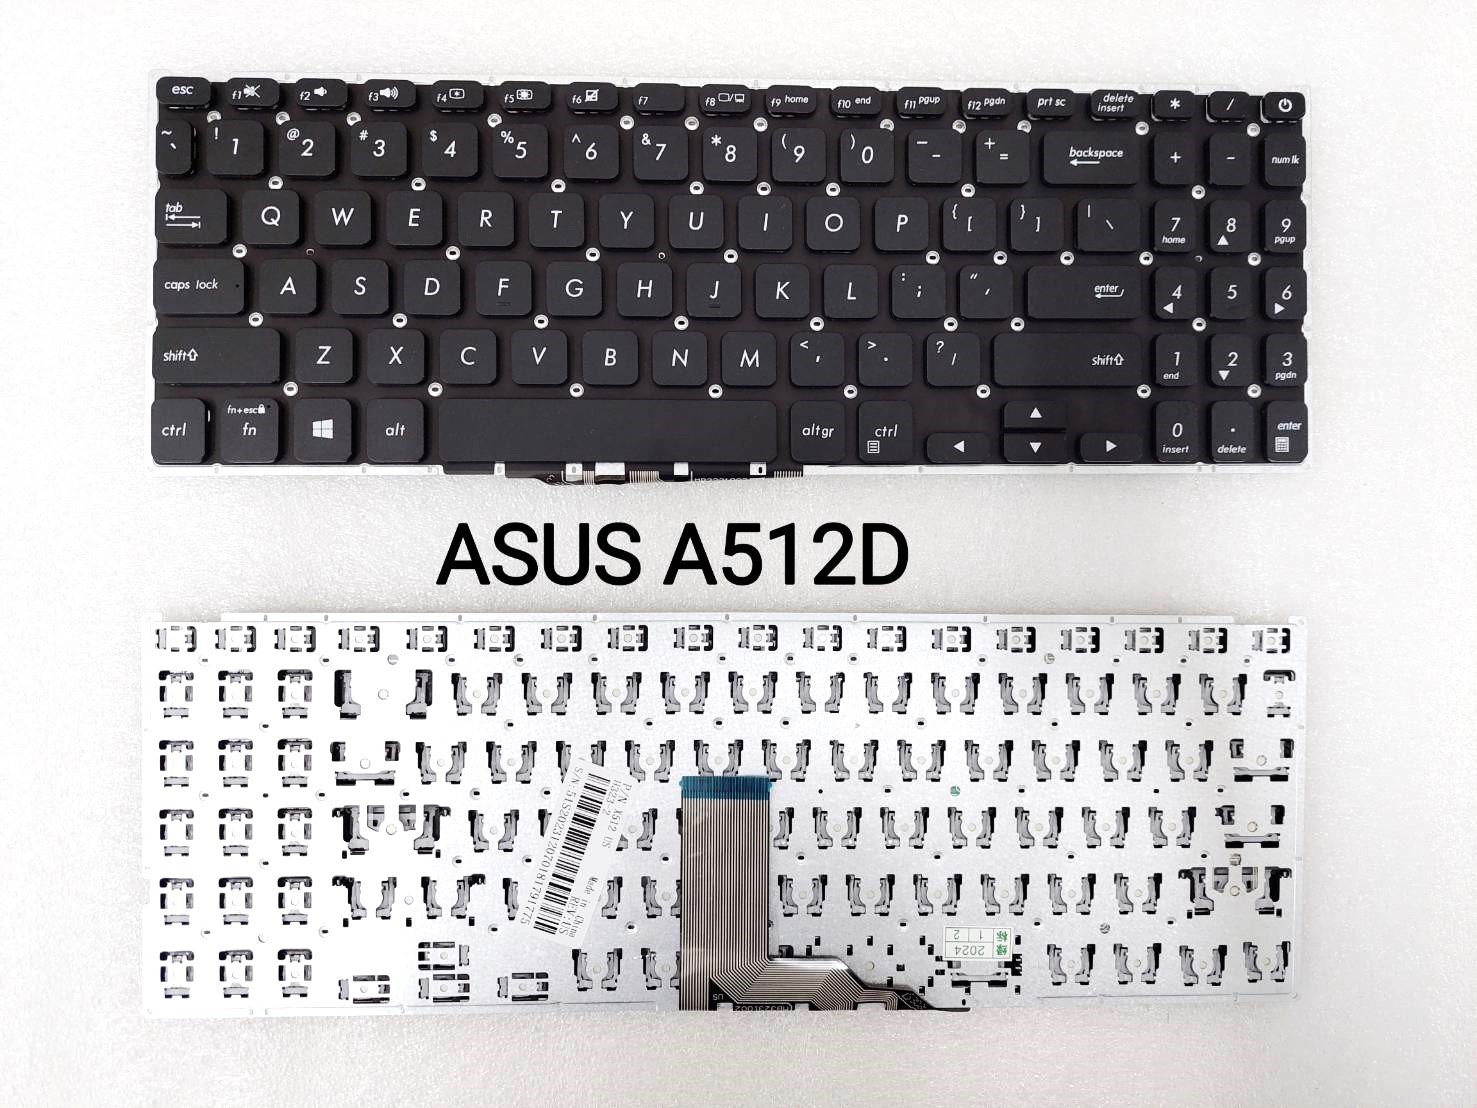 ASUS A512D